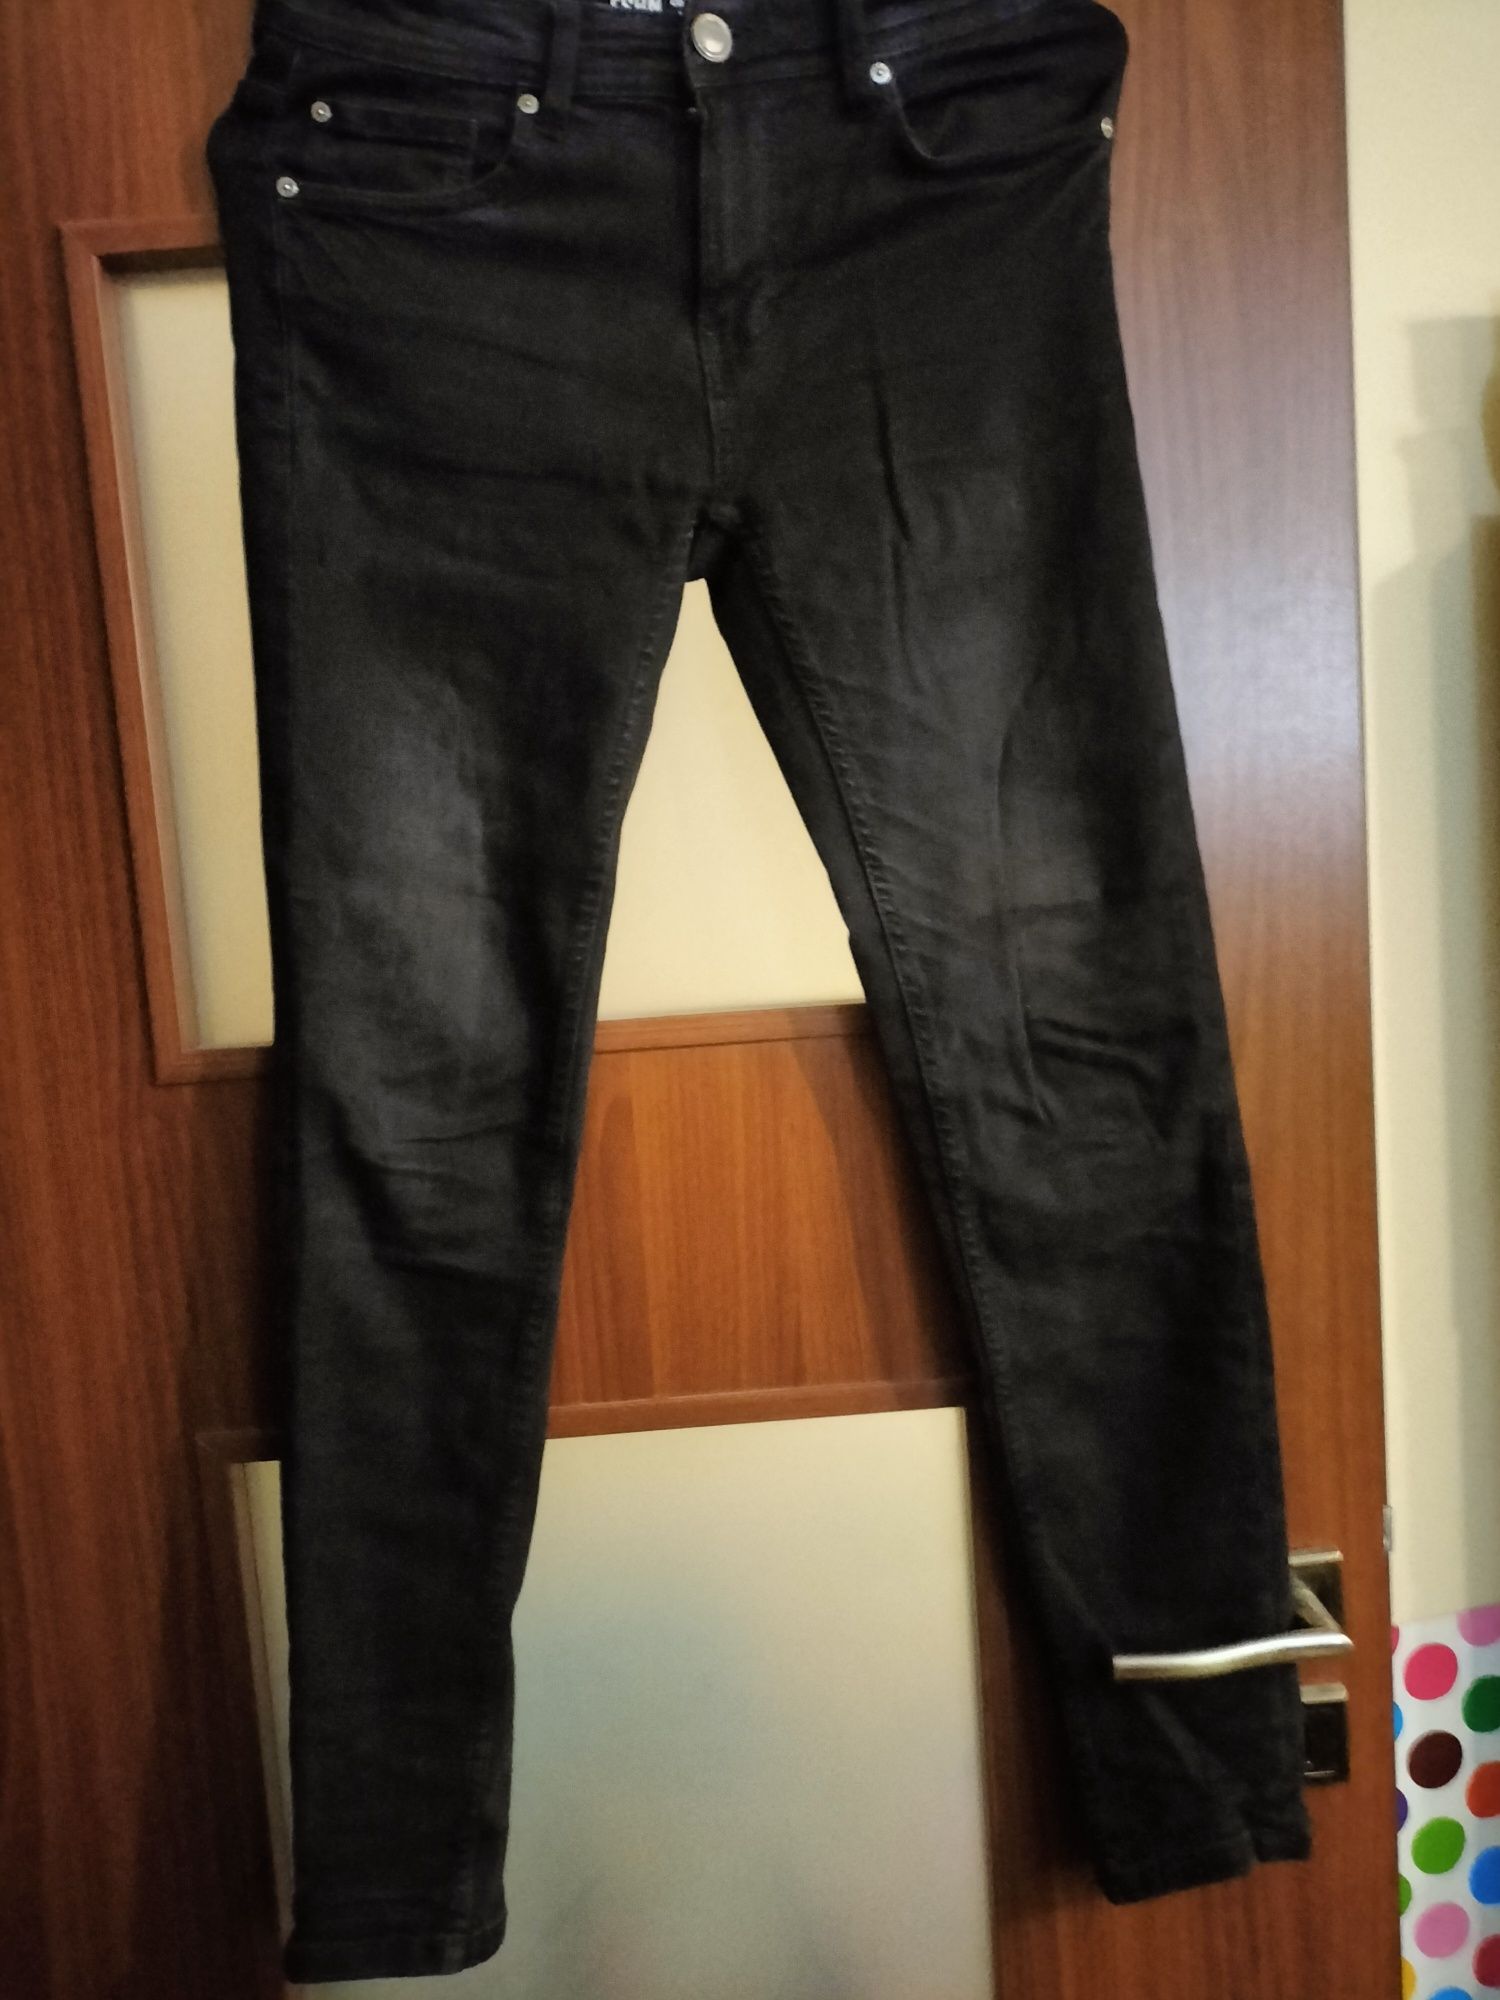 Spodnie jeansowe czarne FSBN 29/30